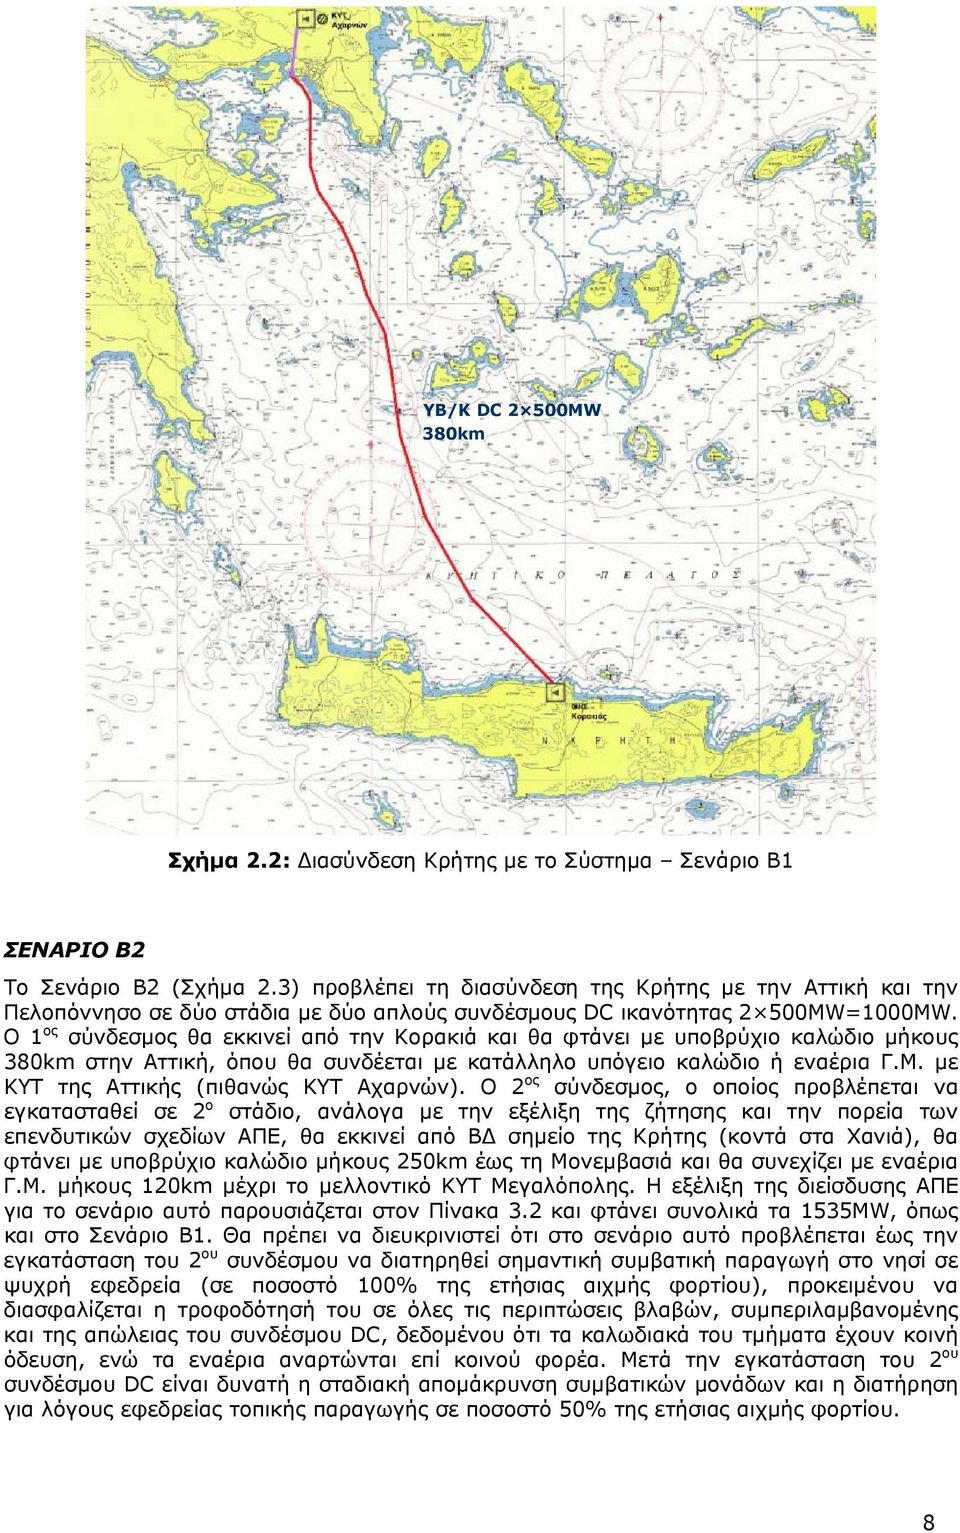 Ο 1 ος σύνδεσμος θα εκκινεί από την Κορακιά και θα φτάνει με υποβρύχιο καλώδιο μήκους 380km στην Αττική, όπου θα συνδέεται με κατάλληλο υπόγειο καλώδιο ή εναέρια Γ.Μ.